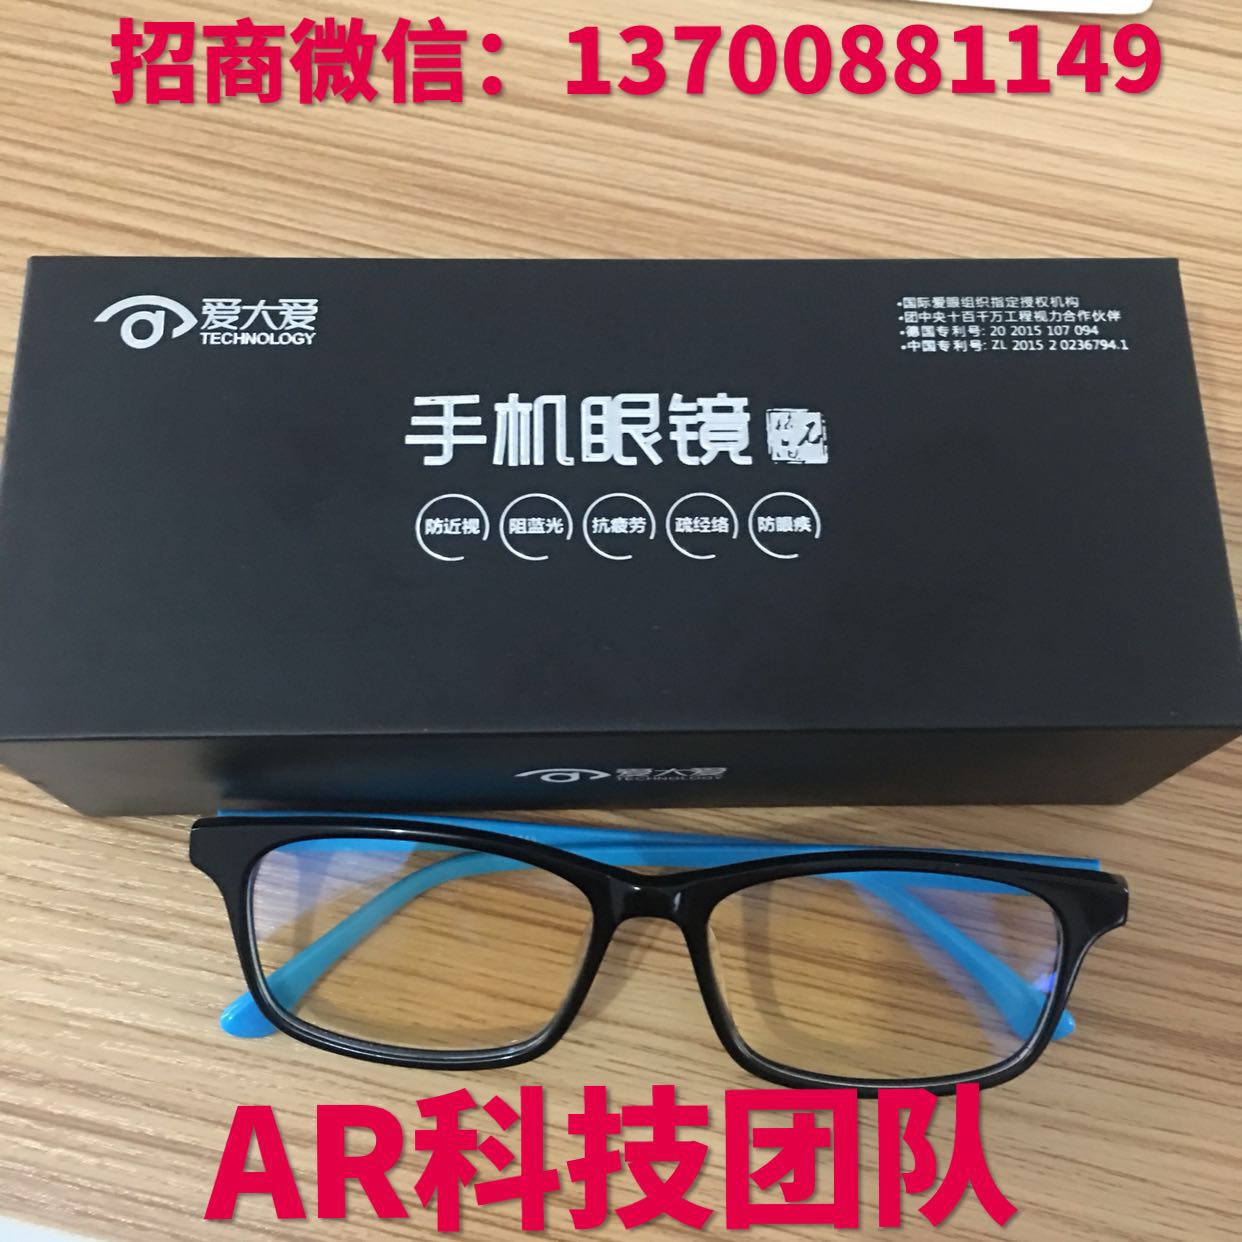 福州市手机眼镜微信代理厂家